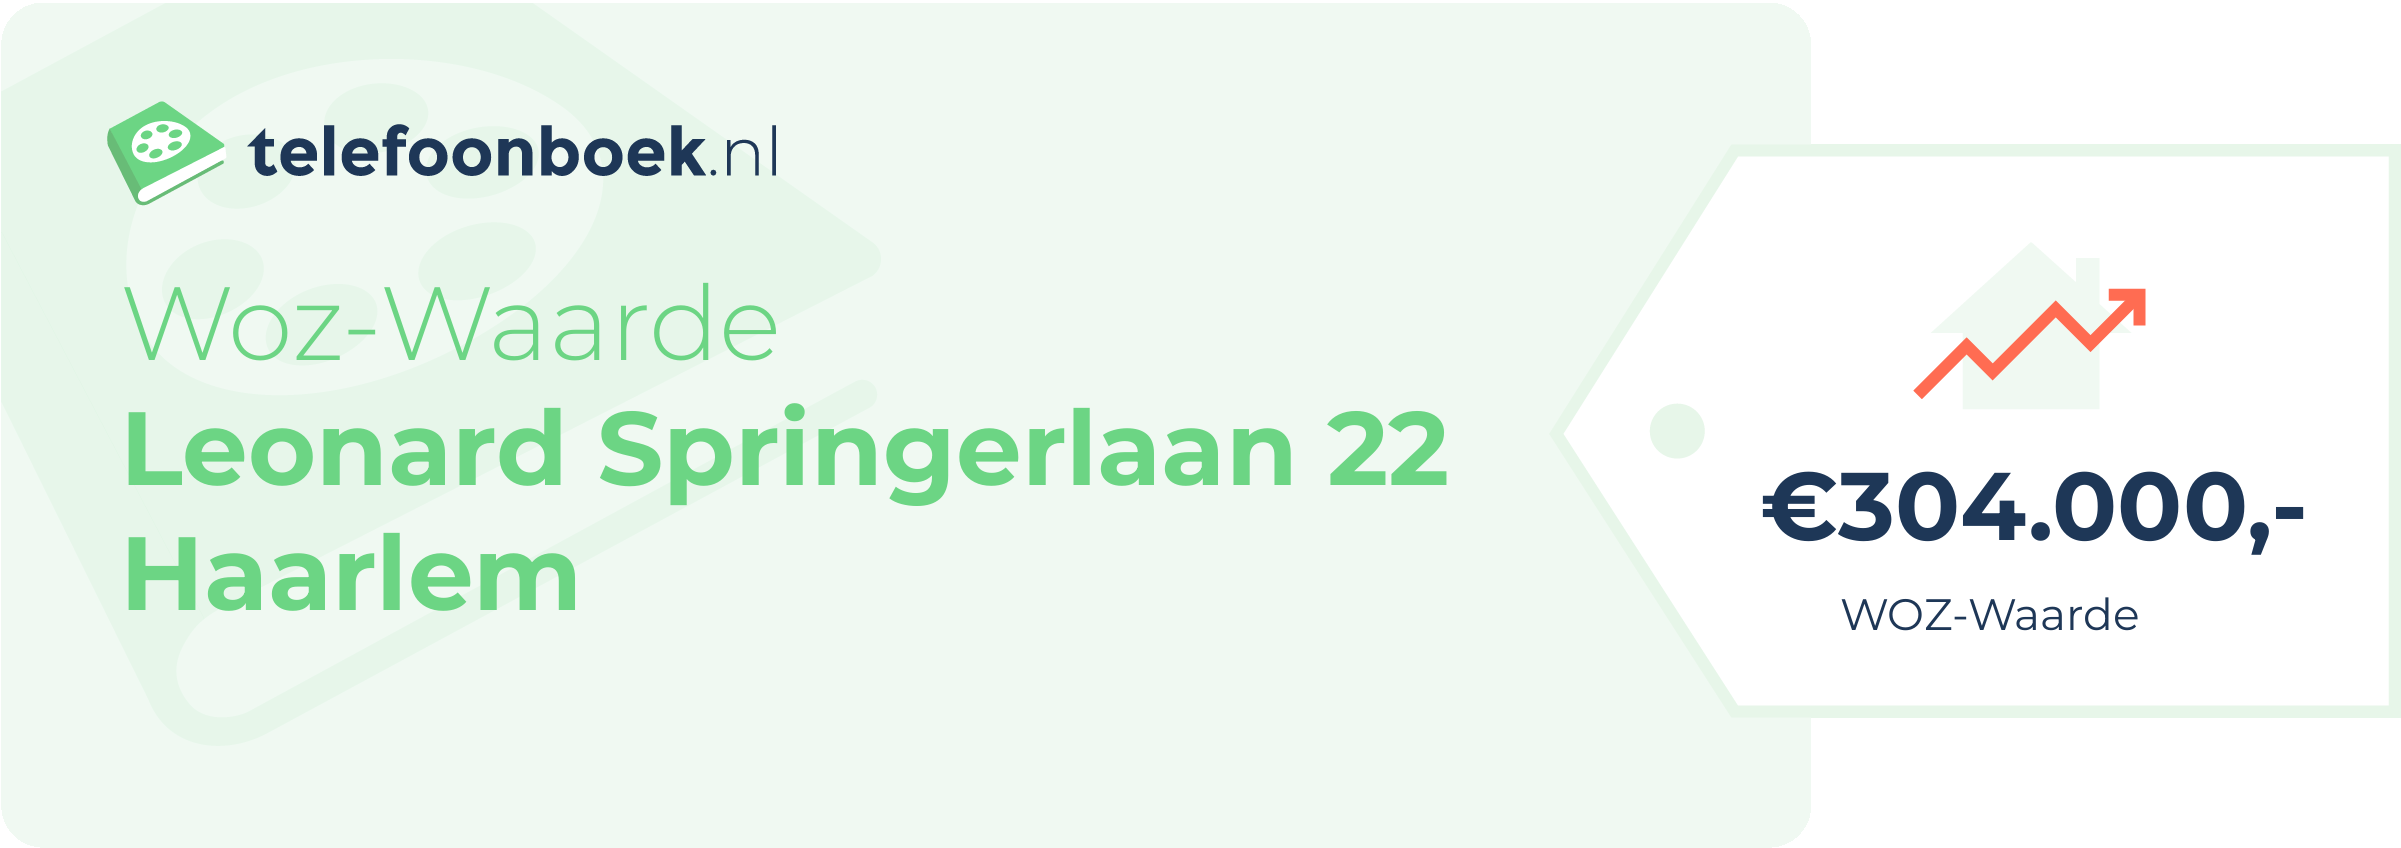 WOZ-waarde Leonard Springerlaan 22 Haarlem